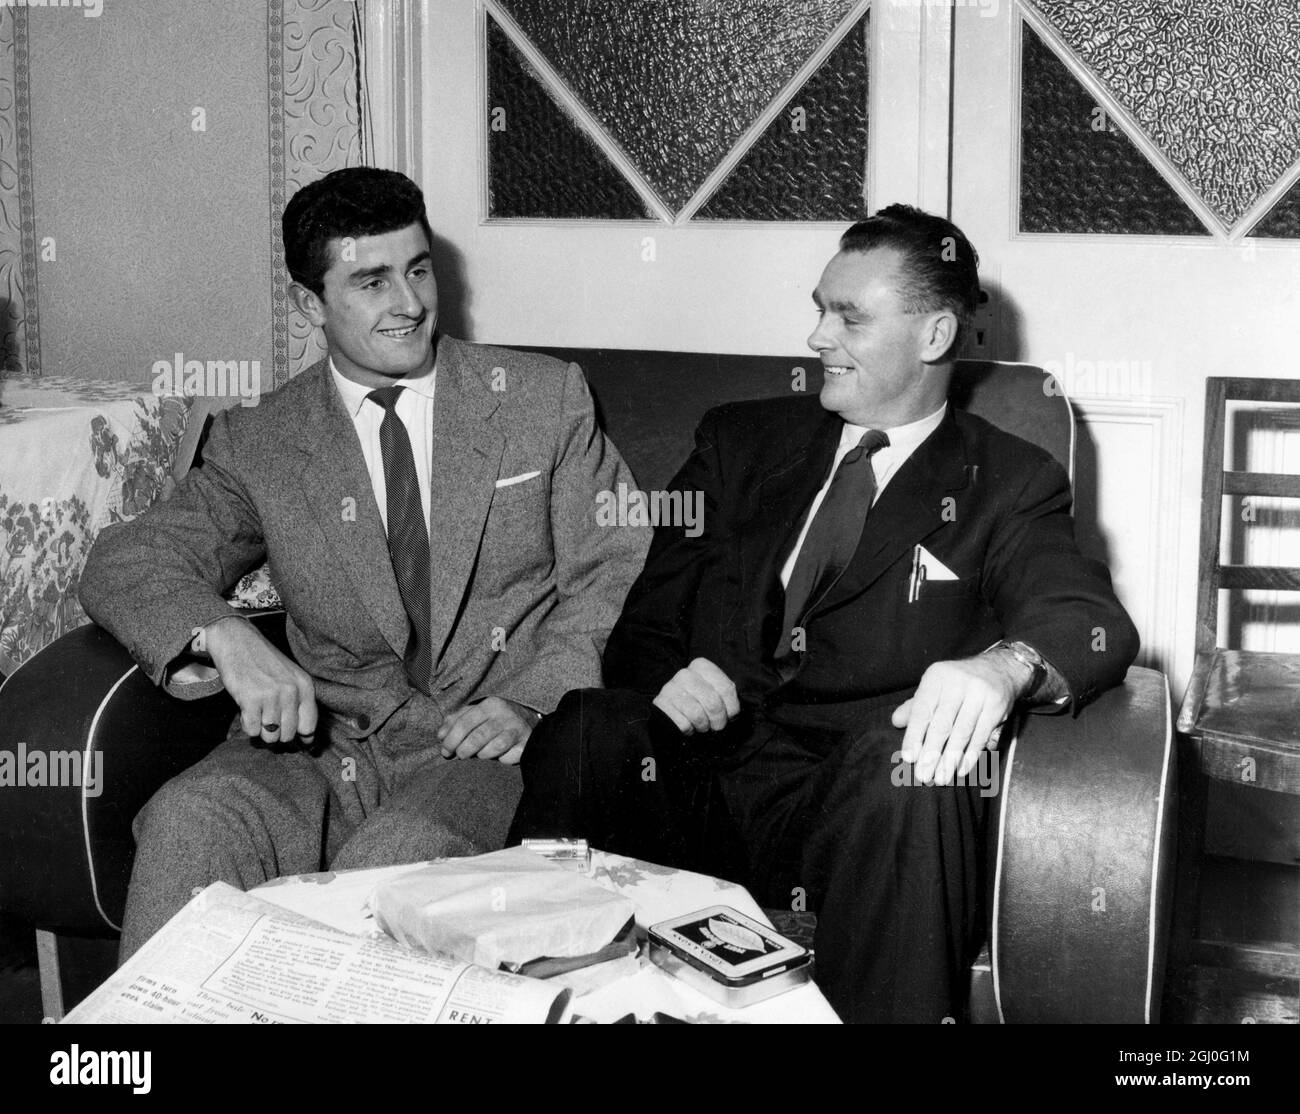 Charles Hurley, i segni di 22 anni per Sunderland da Millwall. La tassa non è stata divulgata, ma è stato riferito che il club di Londra ha rifiutato un'offerta di £15,000 recentemente. Spettacoli fotografici: Charlie Hurley con il manager Sunderland, Alan Brown. 27 settembre 1957 Foto Stock